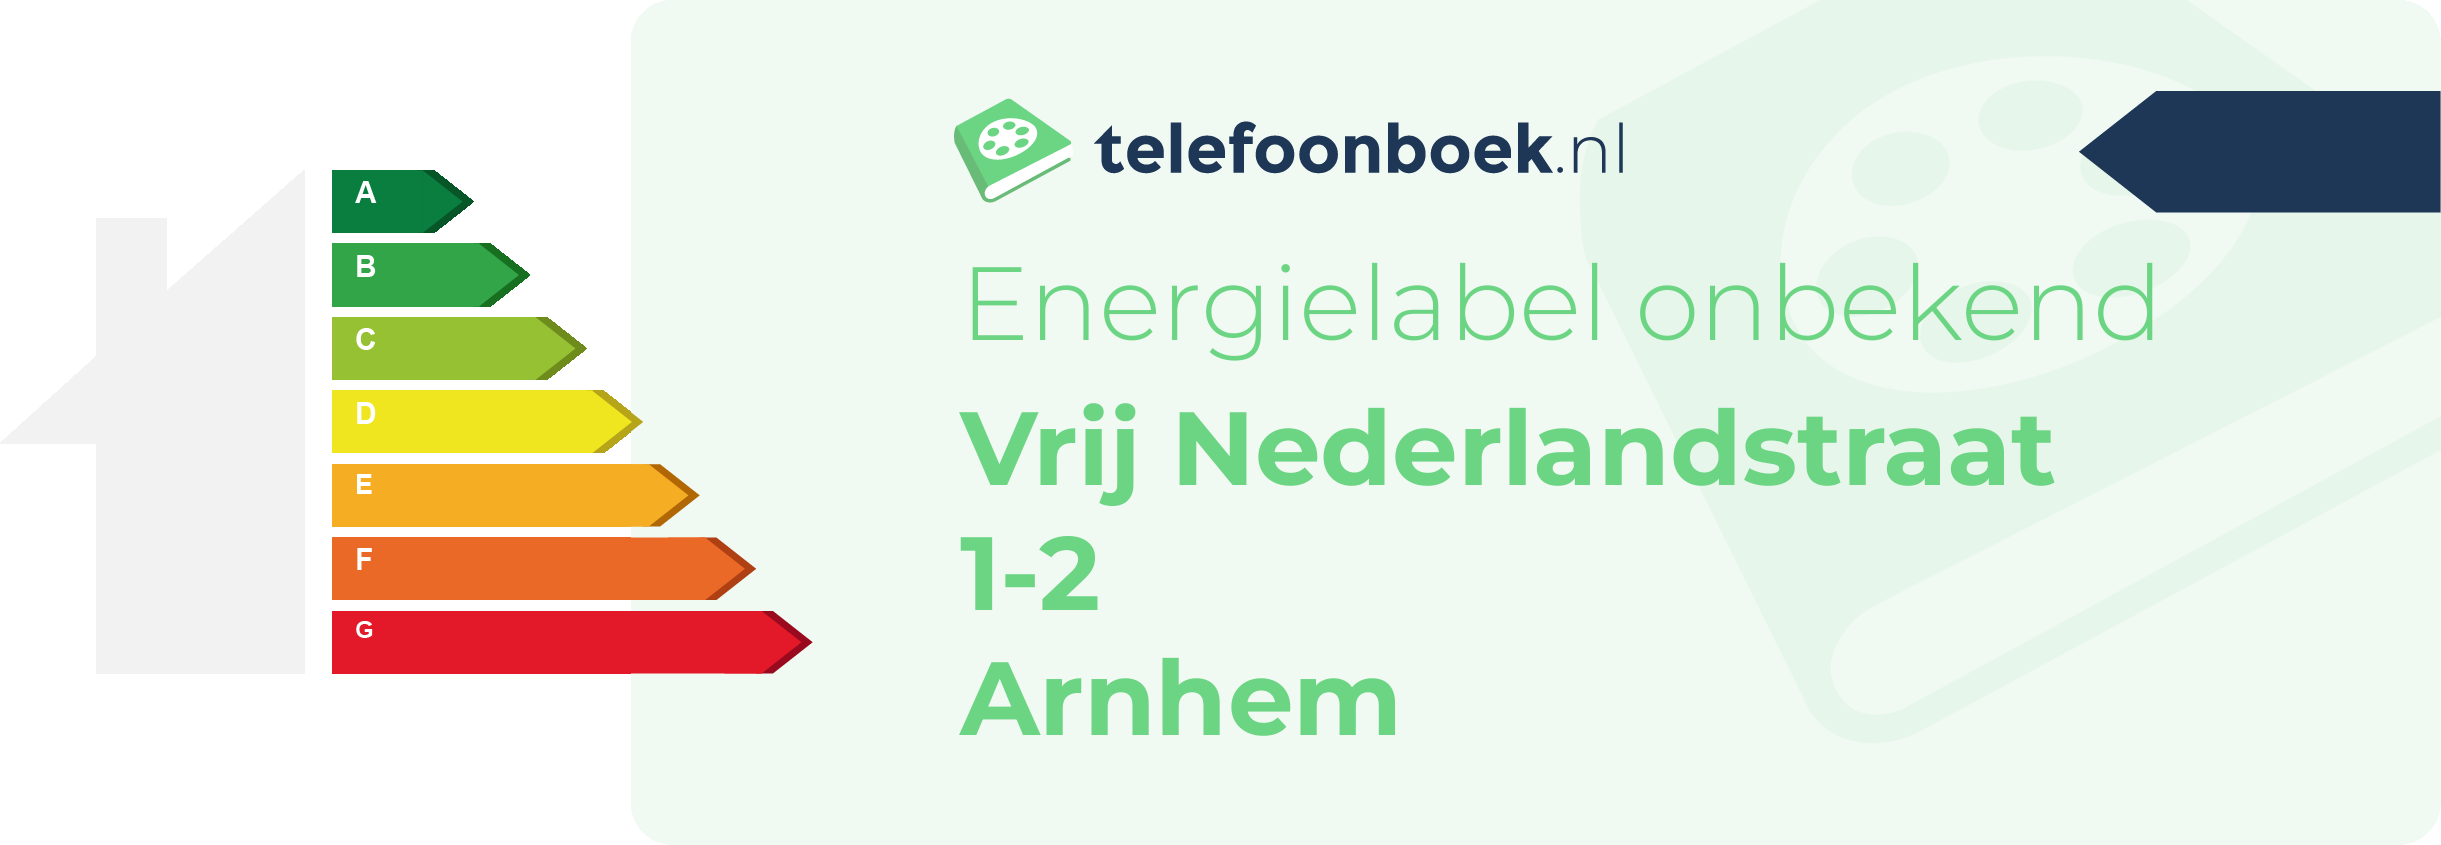 Energielabel Vrij Nederlandstraat 1-2 Arnhem